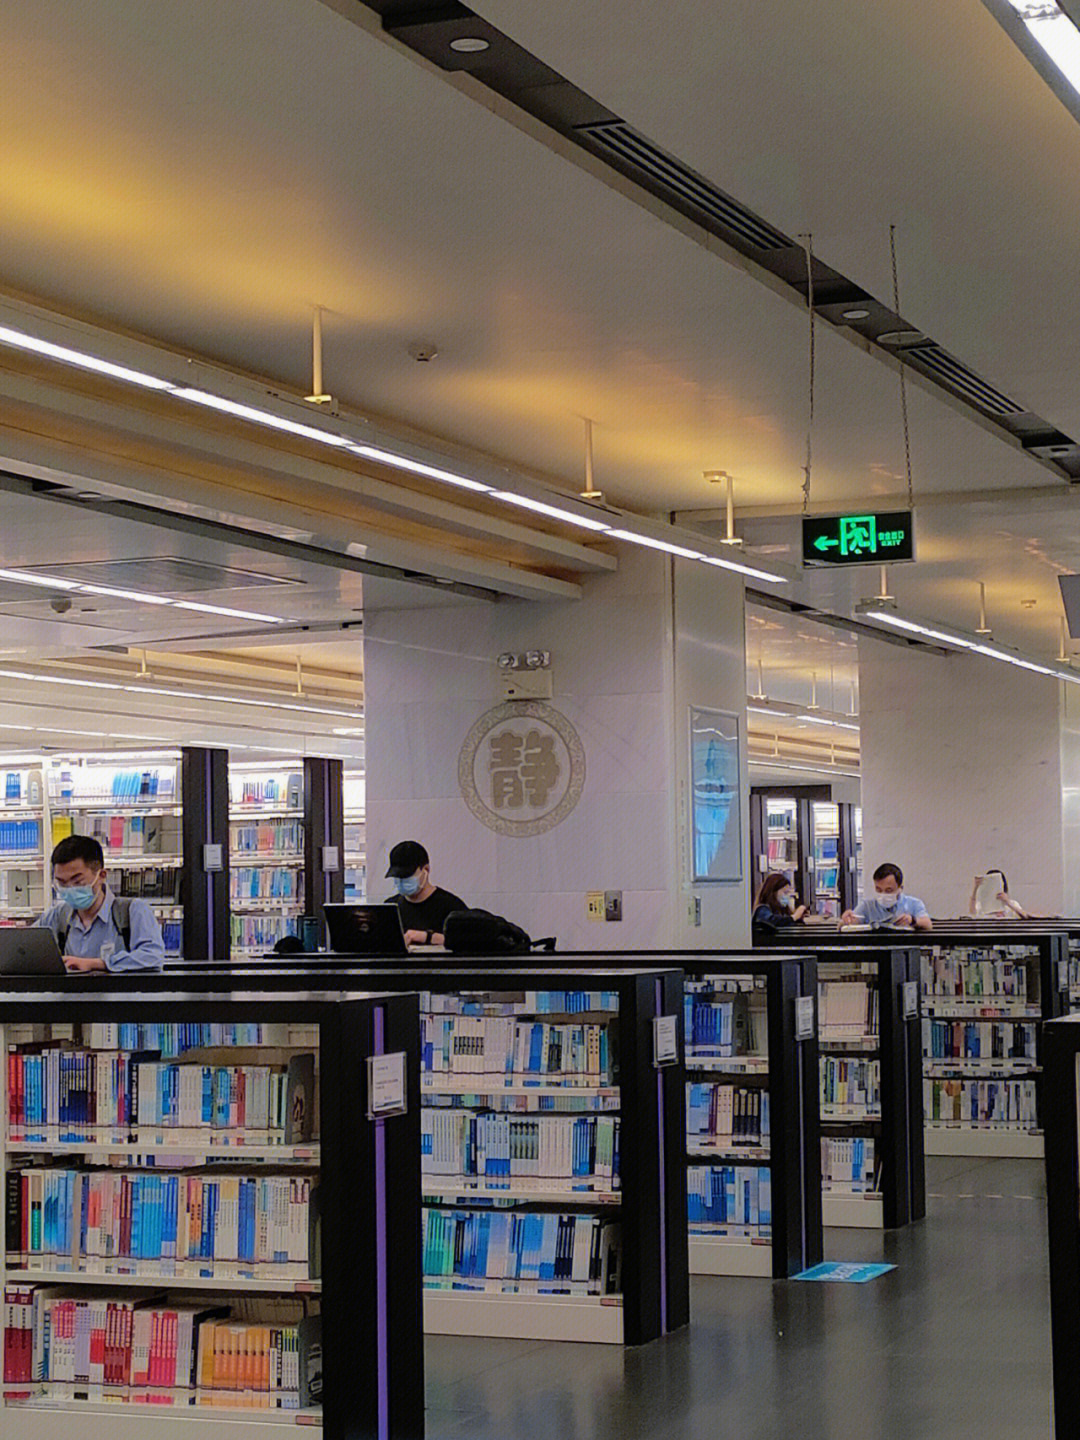 广州图书馆楼层分布图图片